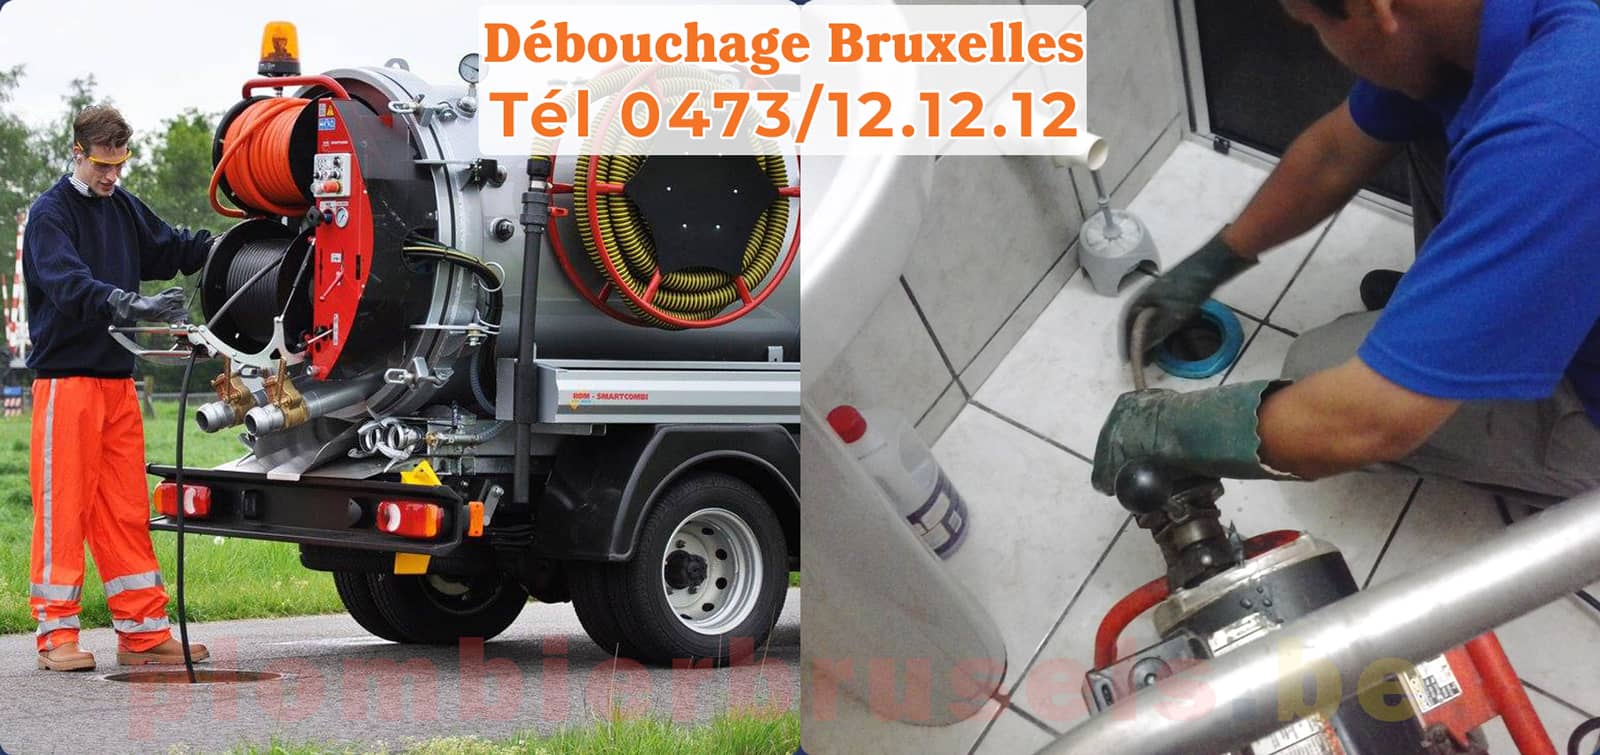 Plombier Brussels service de Débouchage Bruxelles d'égout tél 0473/12.12.12